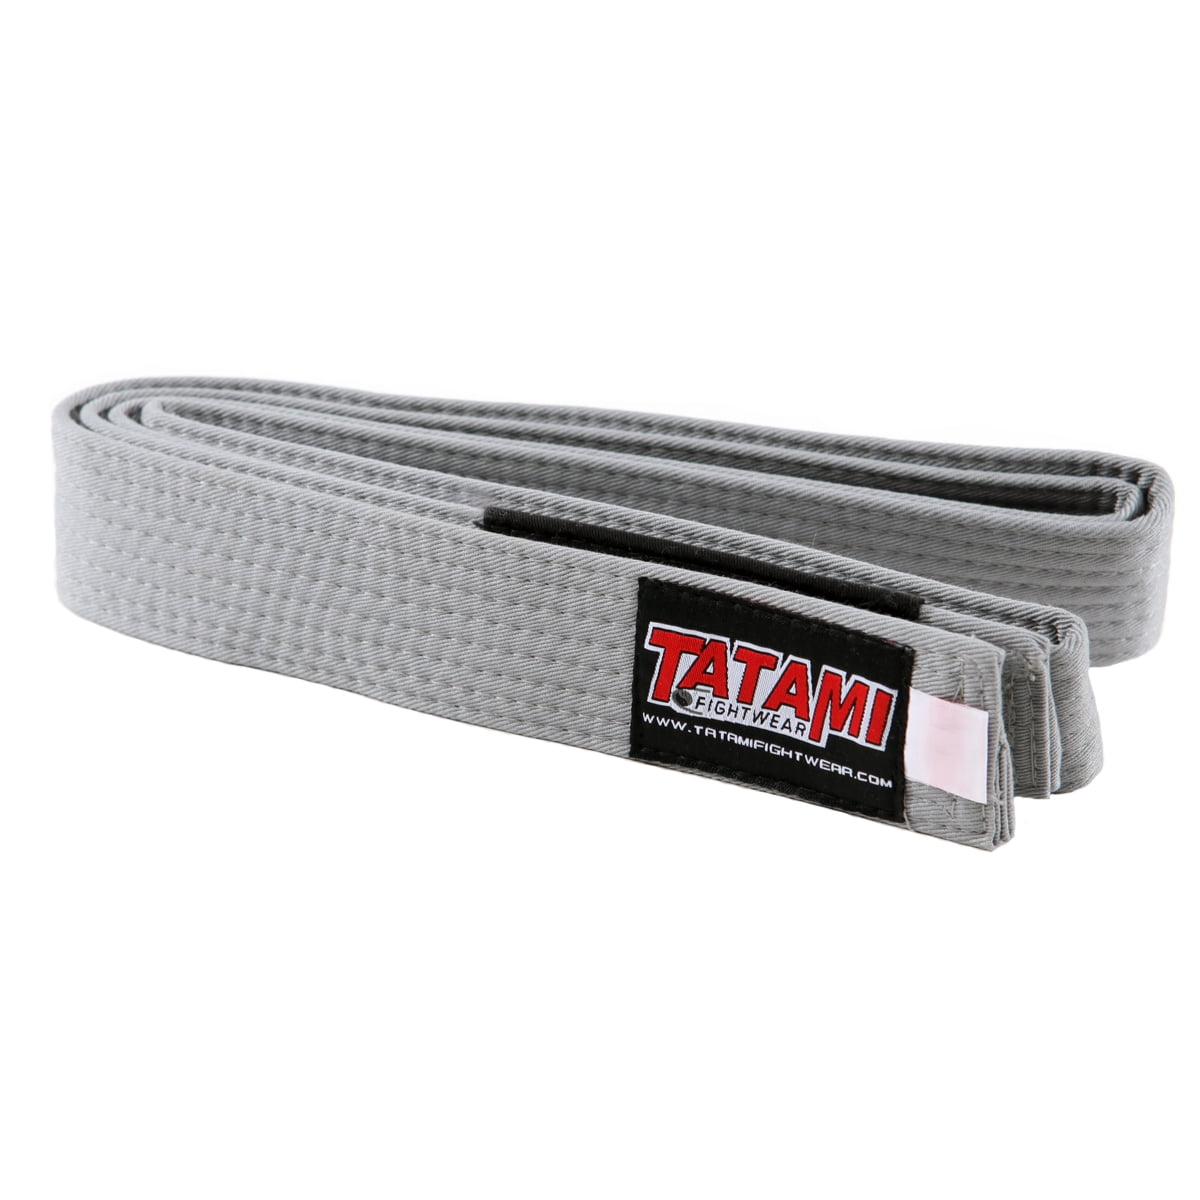 Tatami Fightwear - Kids BJJ Rank Belt - M0 - Gray - Walmart.com